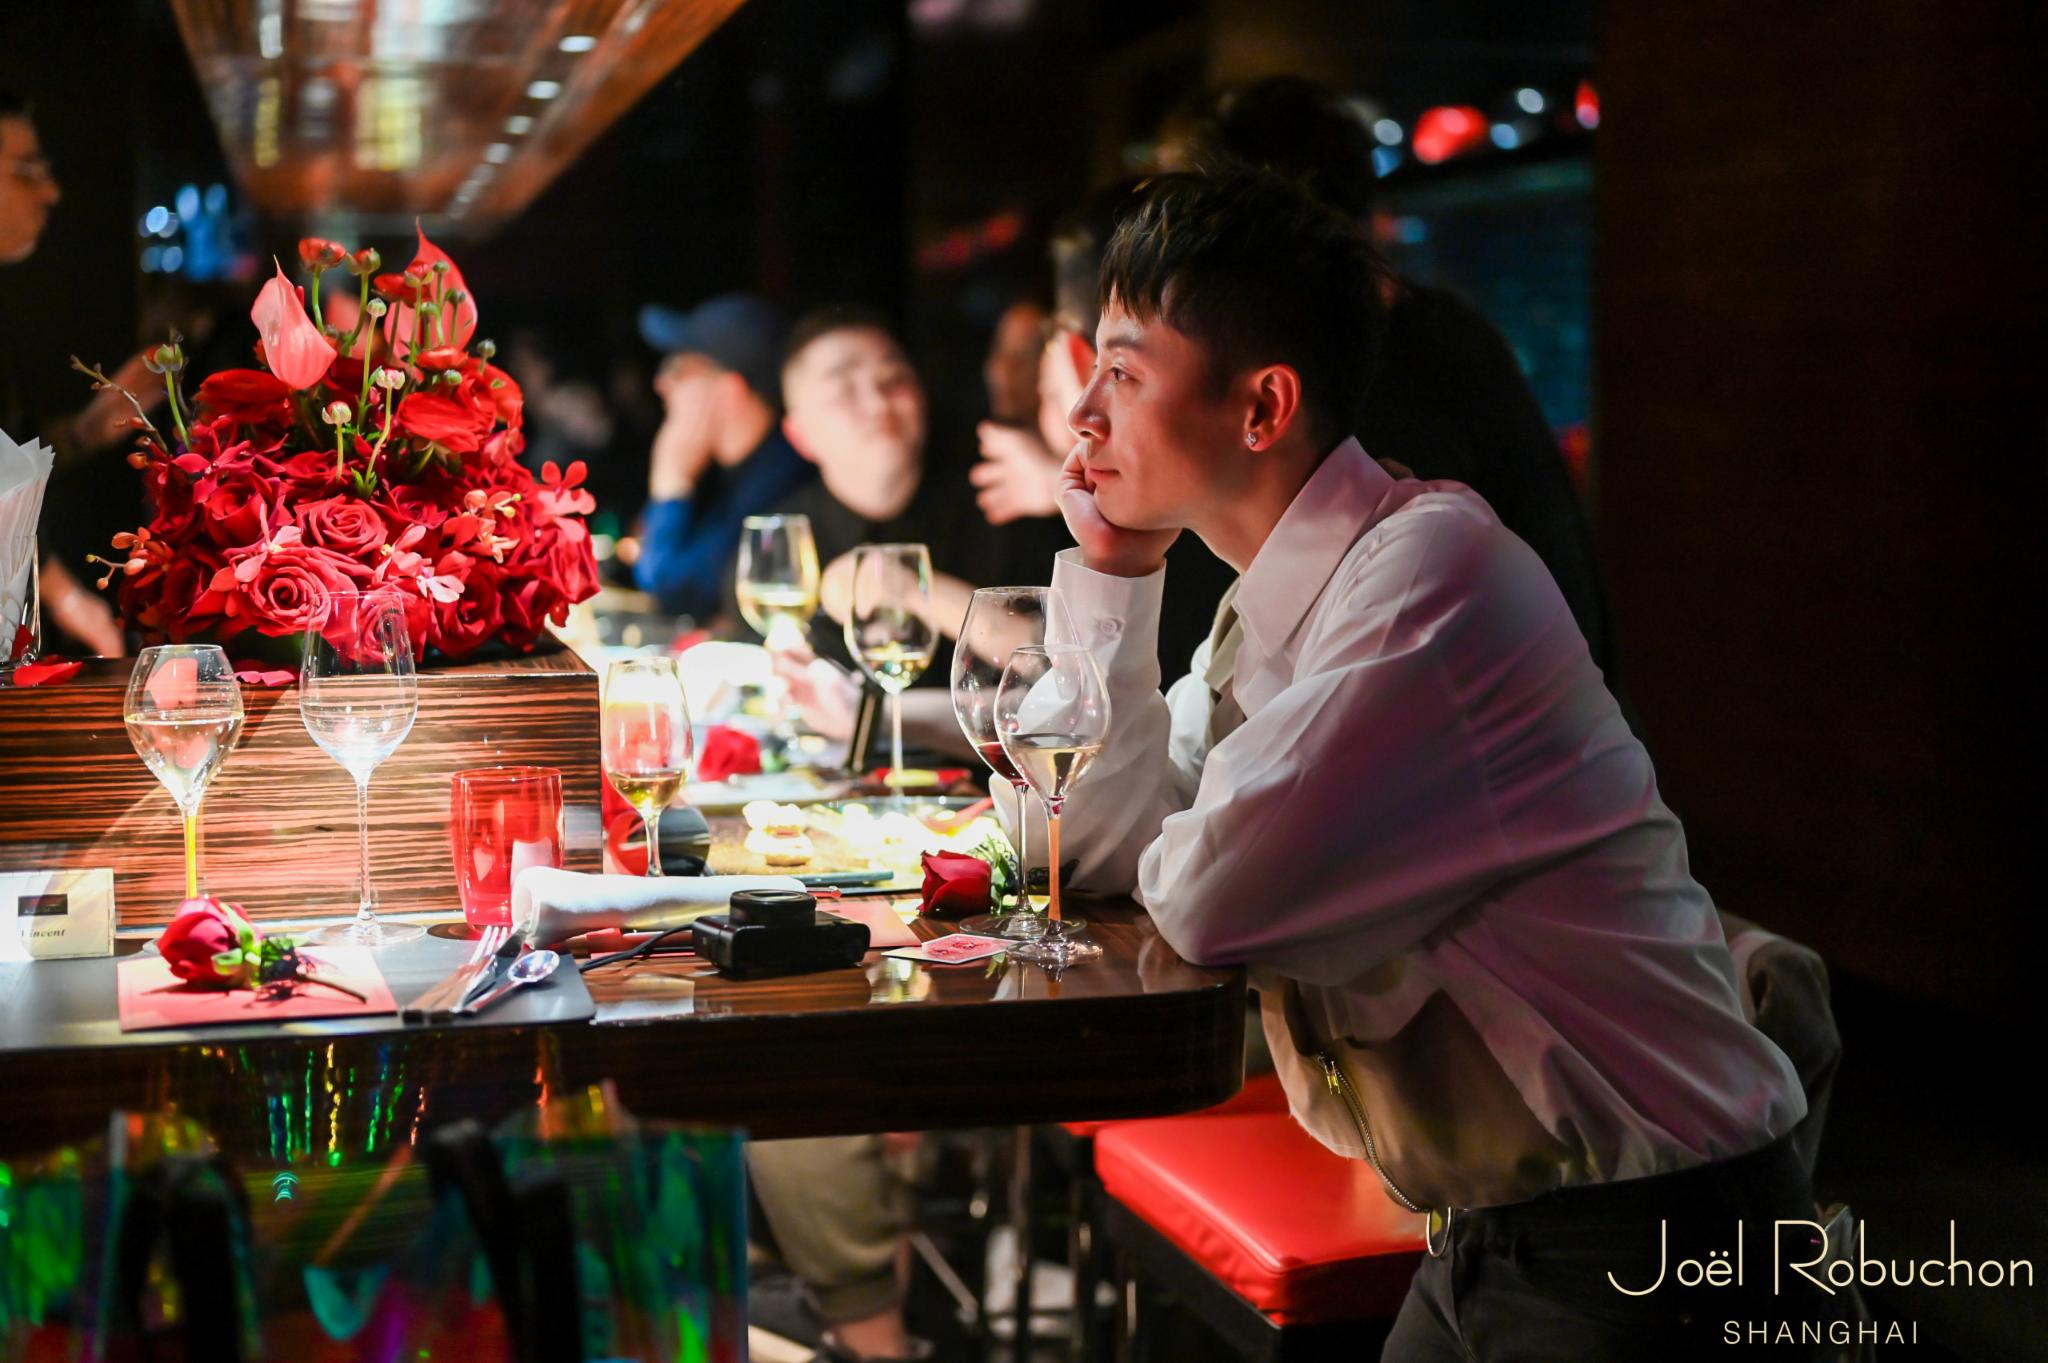 神会吃丨上海法餐界鄙视链顶端的LAtelier五岁了